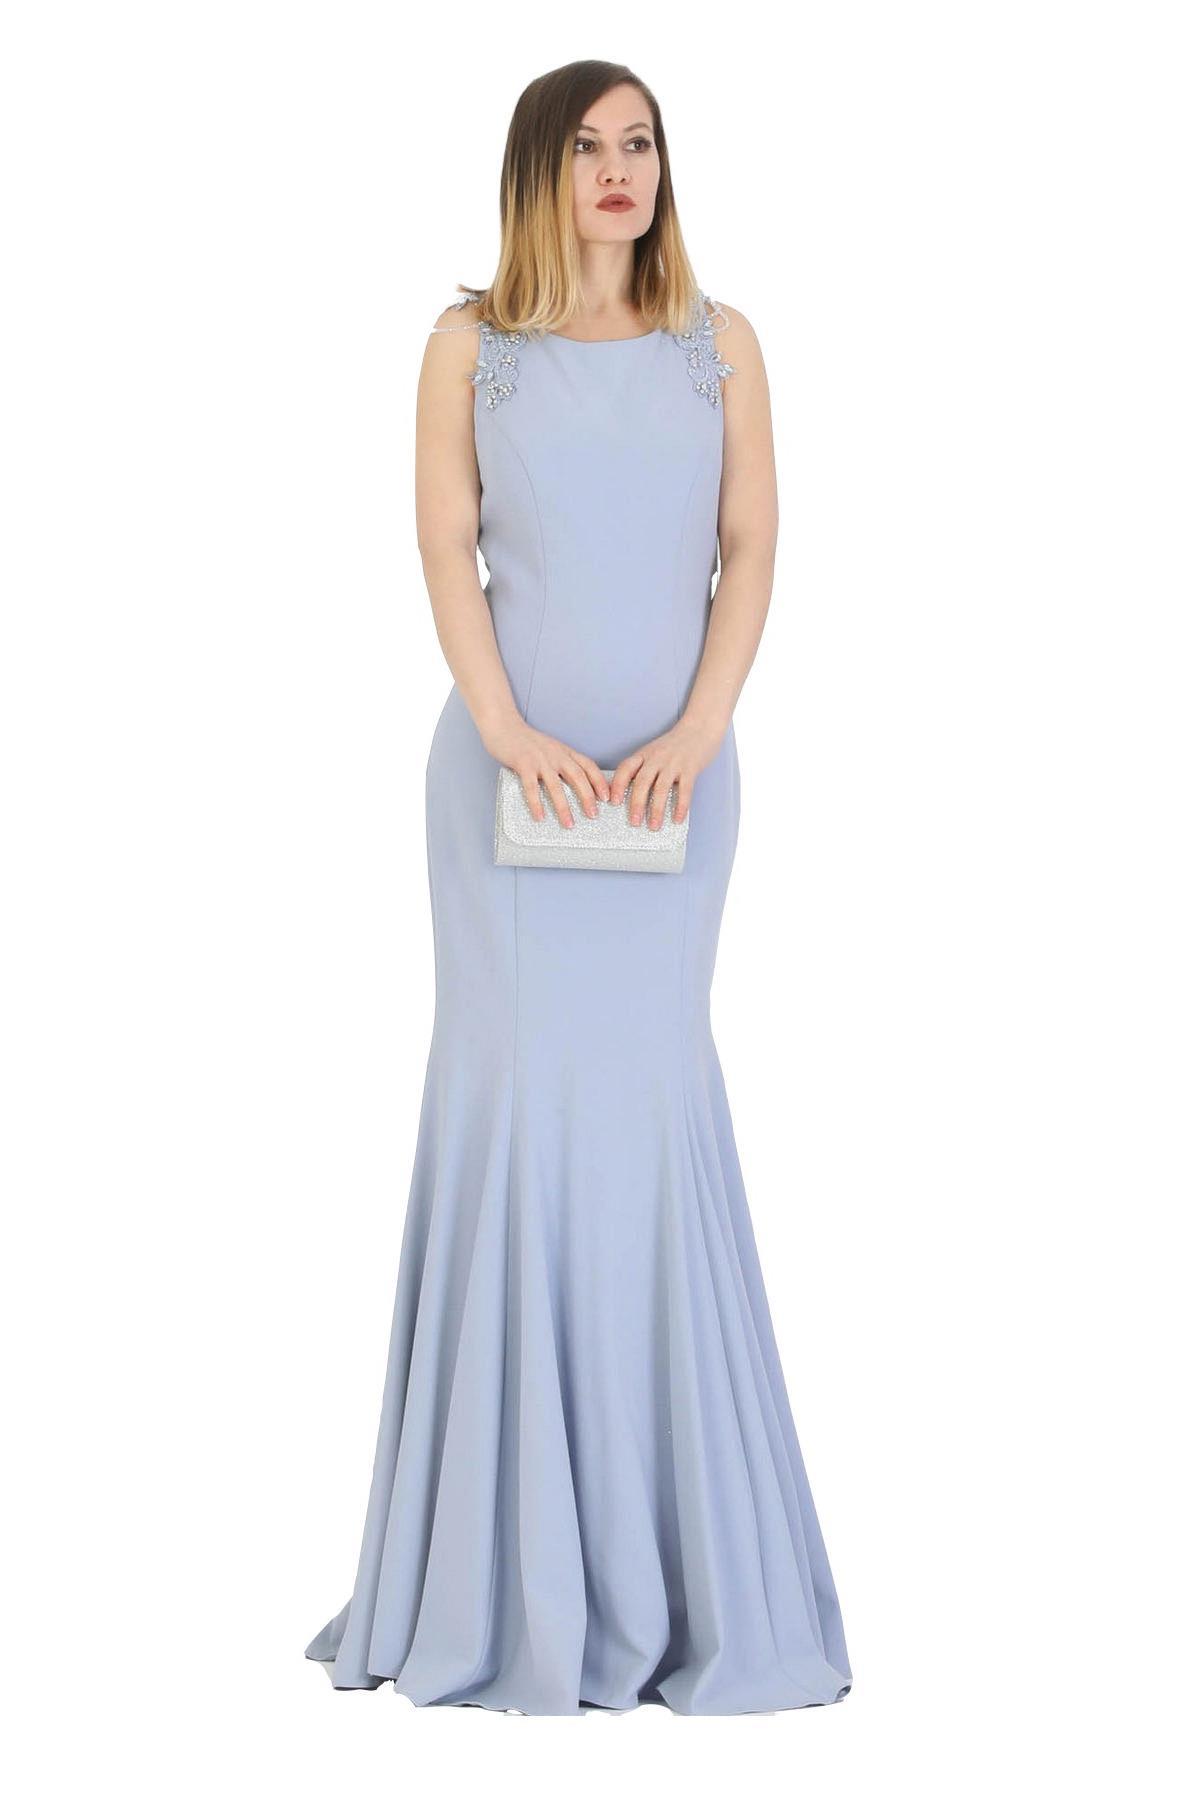 Fierte Kadın Abiye Elbise Tn7705 Oval Yaka Balık Saks Mavi Bordo Abiye Elbise